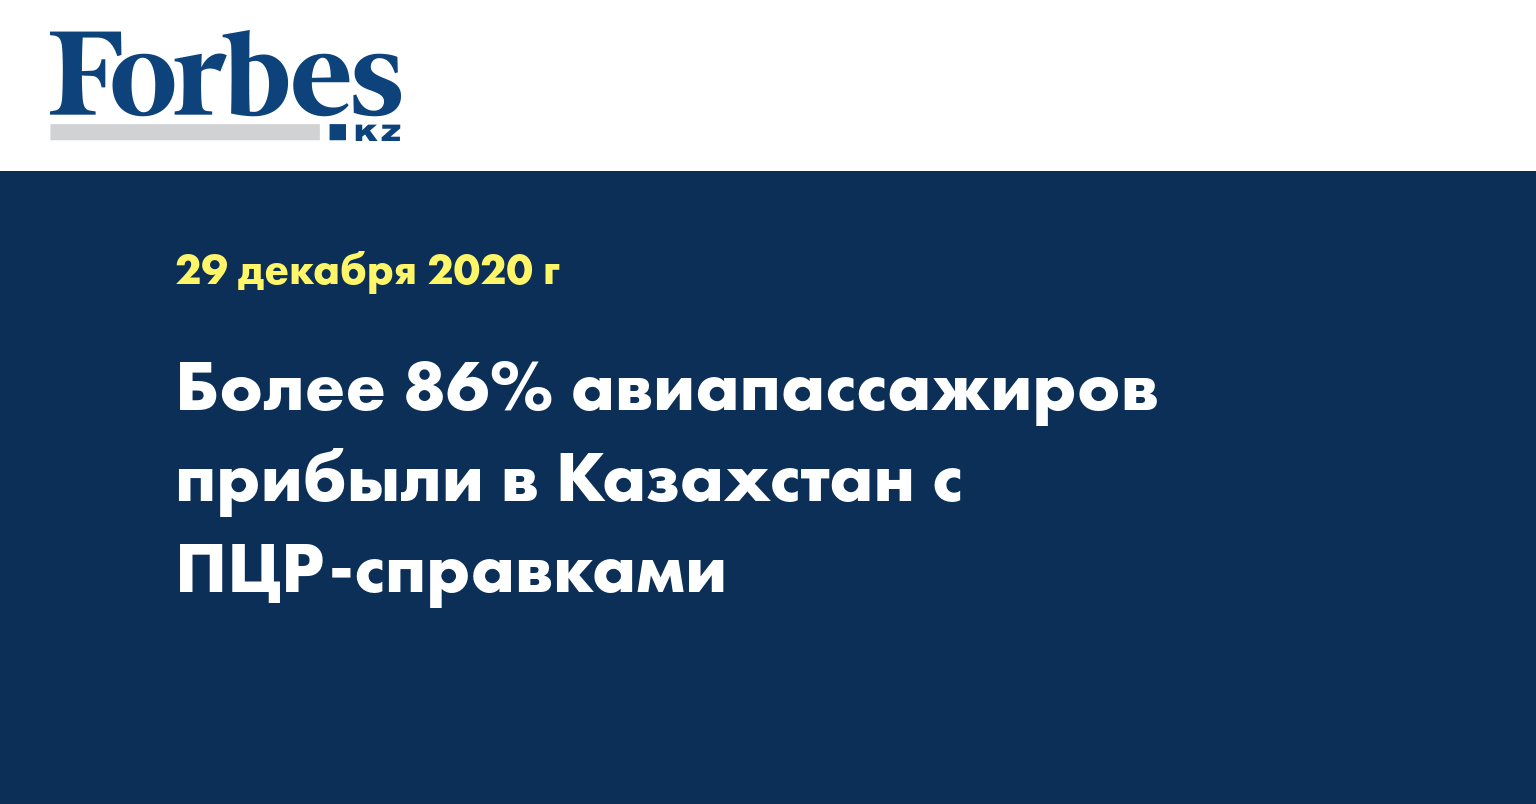 Более 86% авиапассажиров прибыли в Казахстан с ПЦР-справками